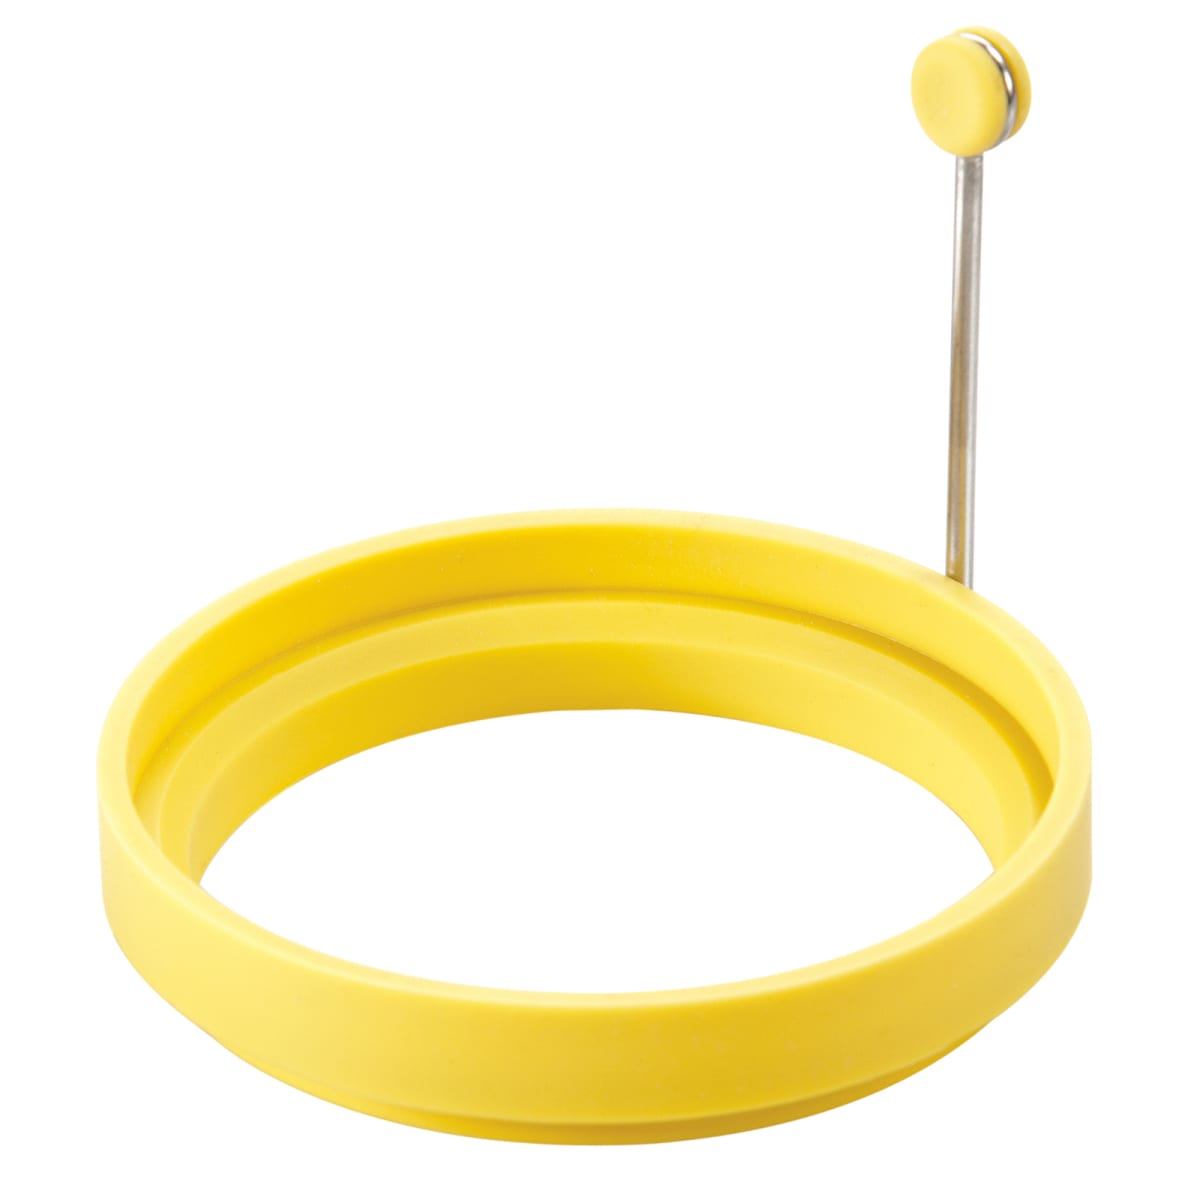 Yellow Silicone Pancake/Egg Ring + Reviews